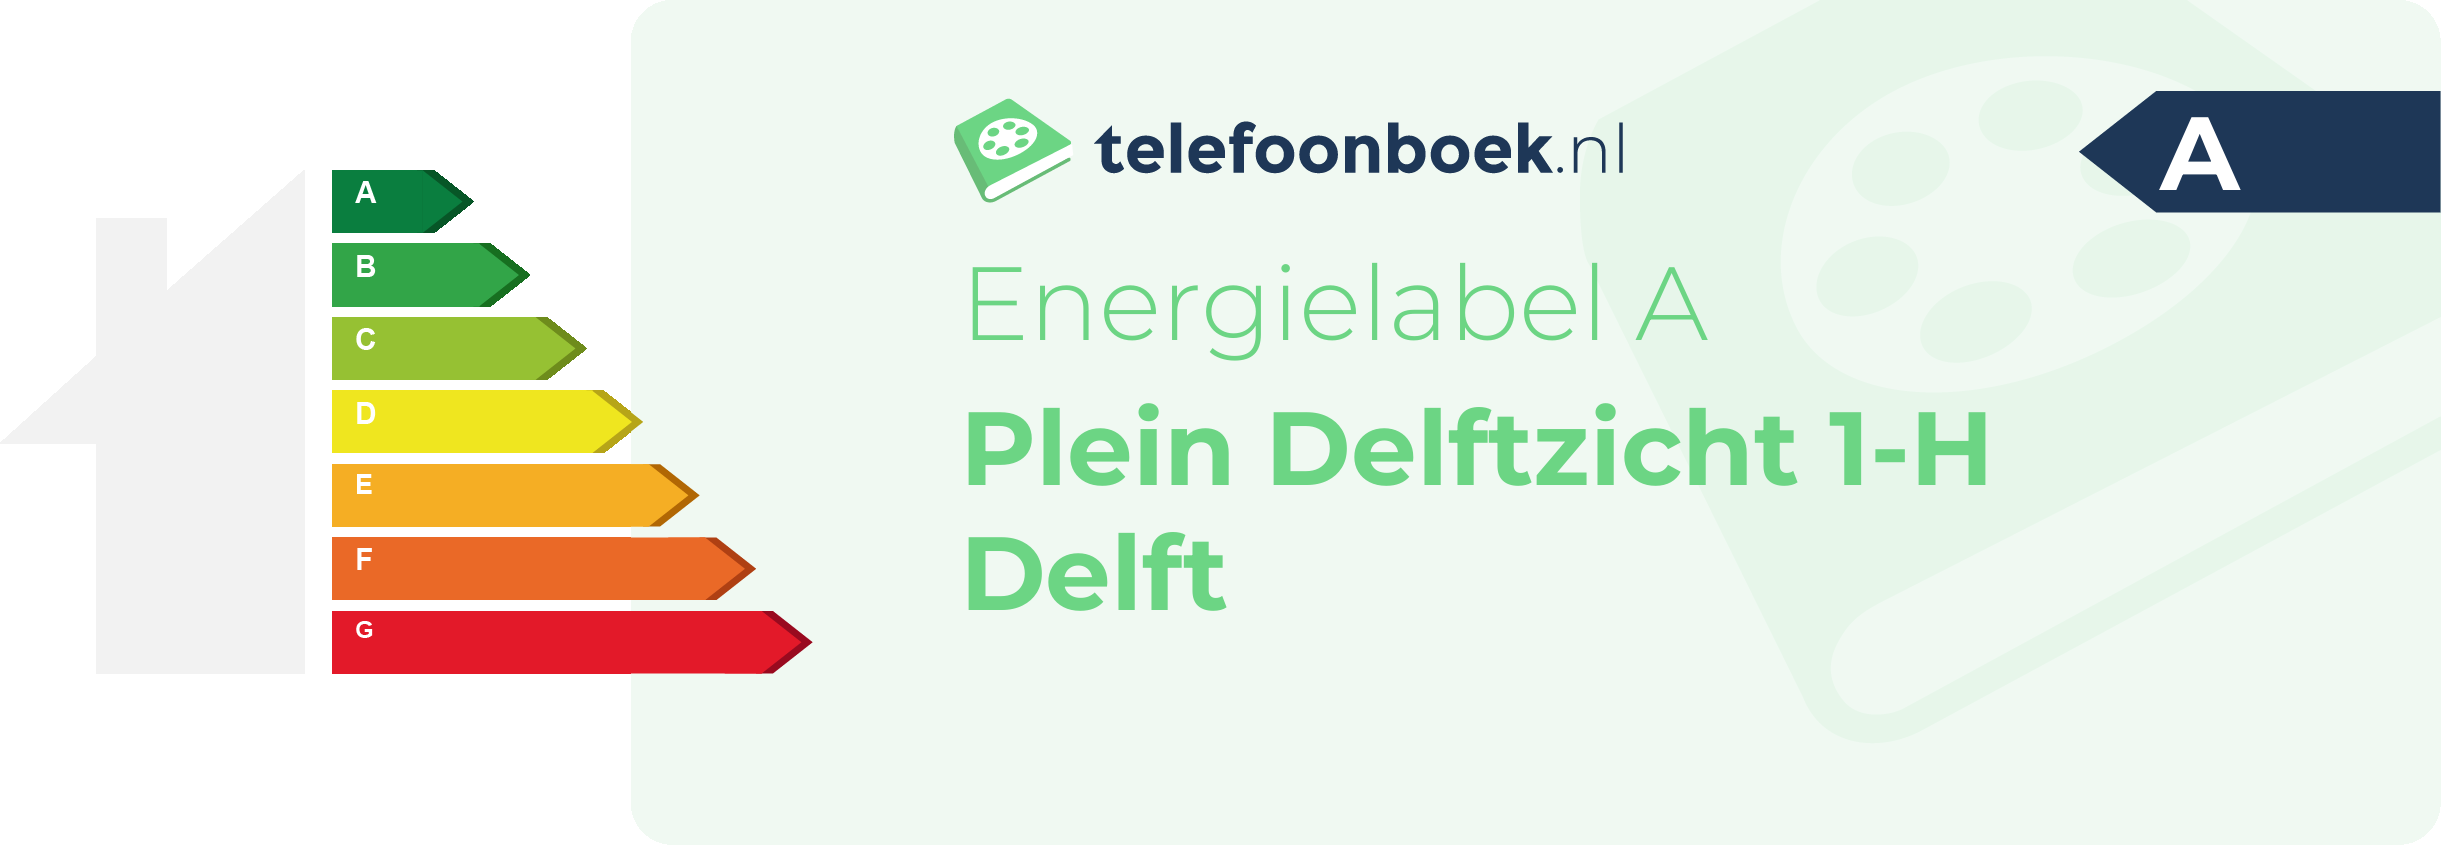 Energielabel Plein Delftzicht 1-H Delft